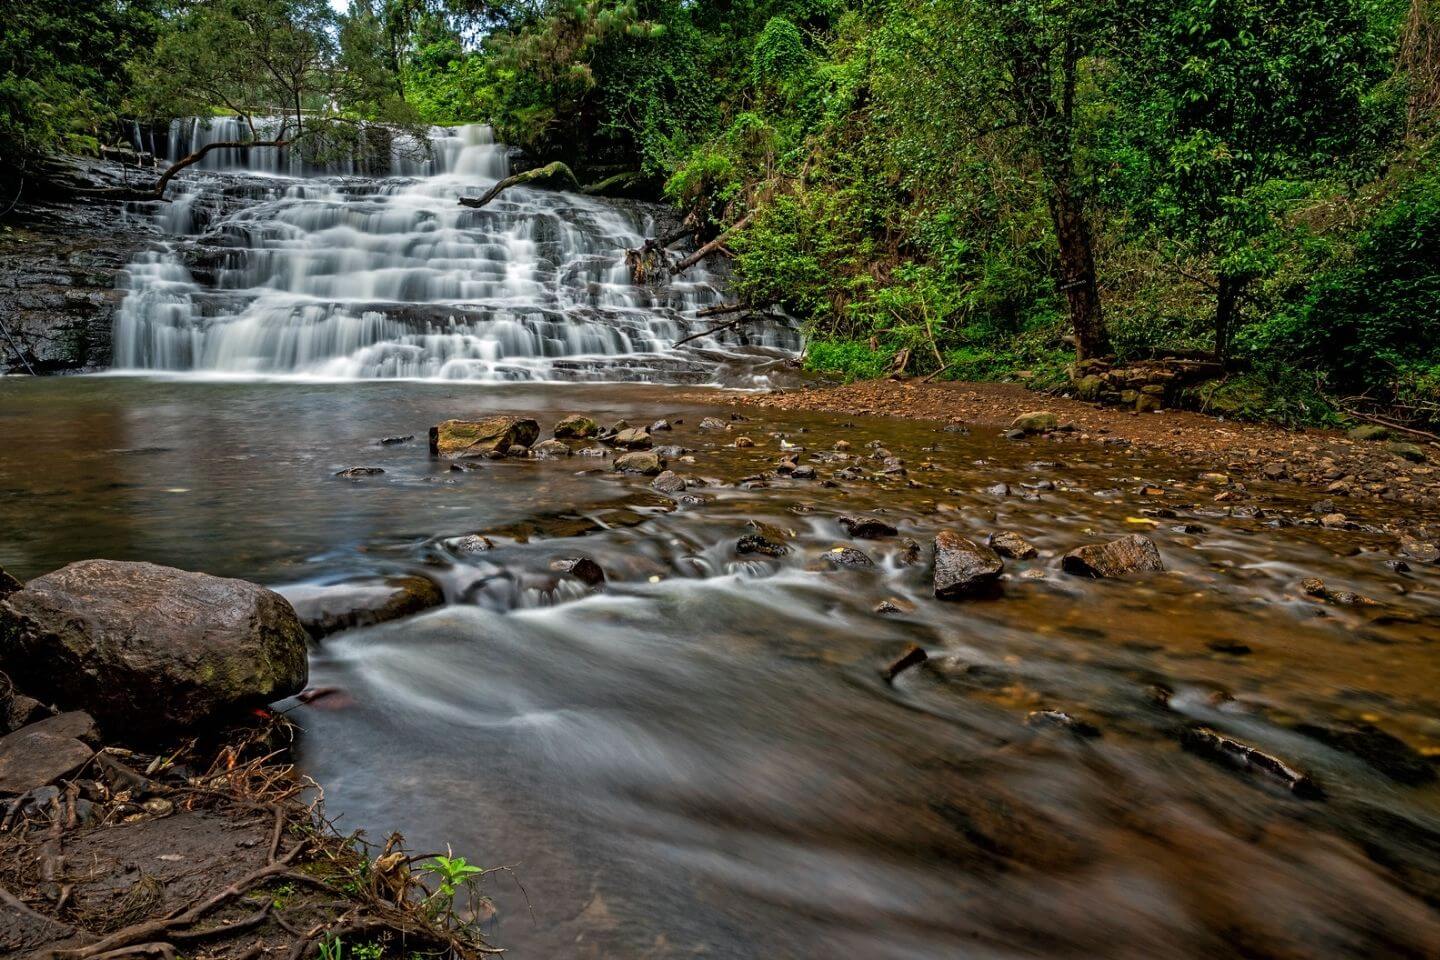 Vattakanal Falls Kodaikanal Tourist Place to See